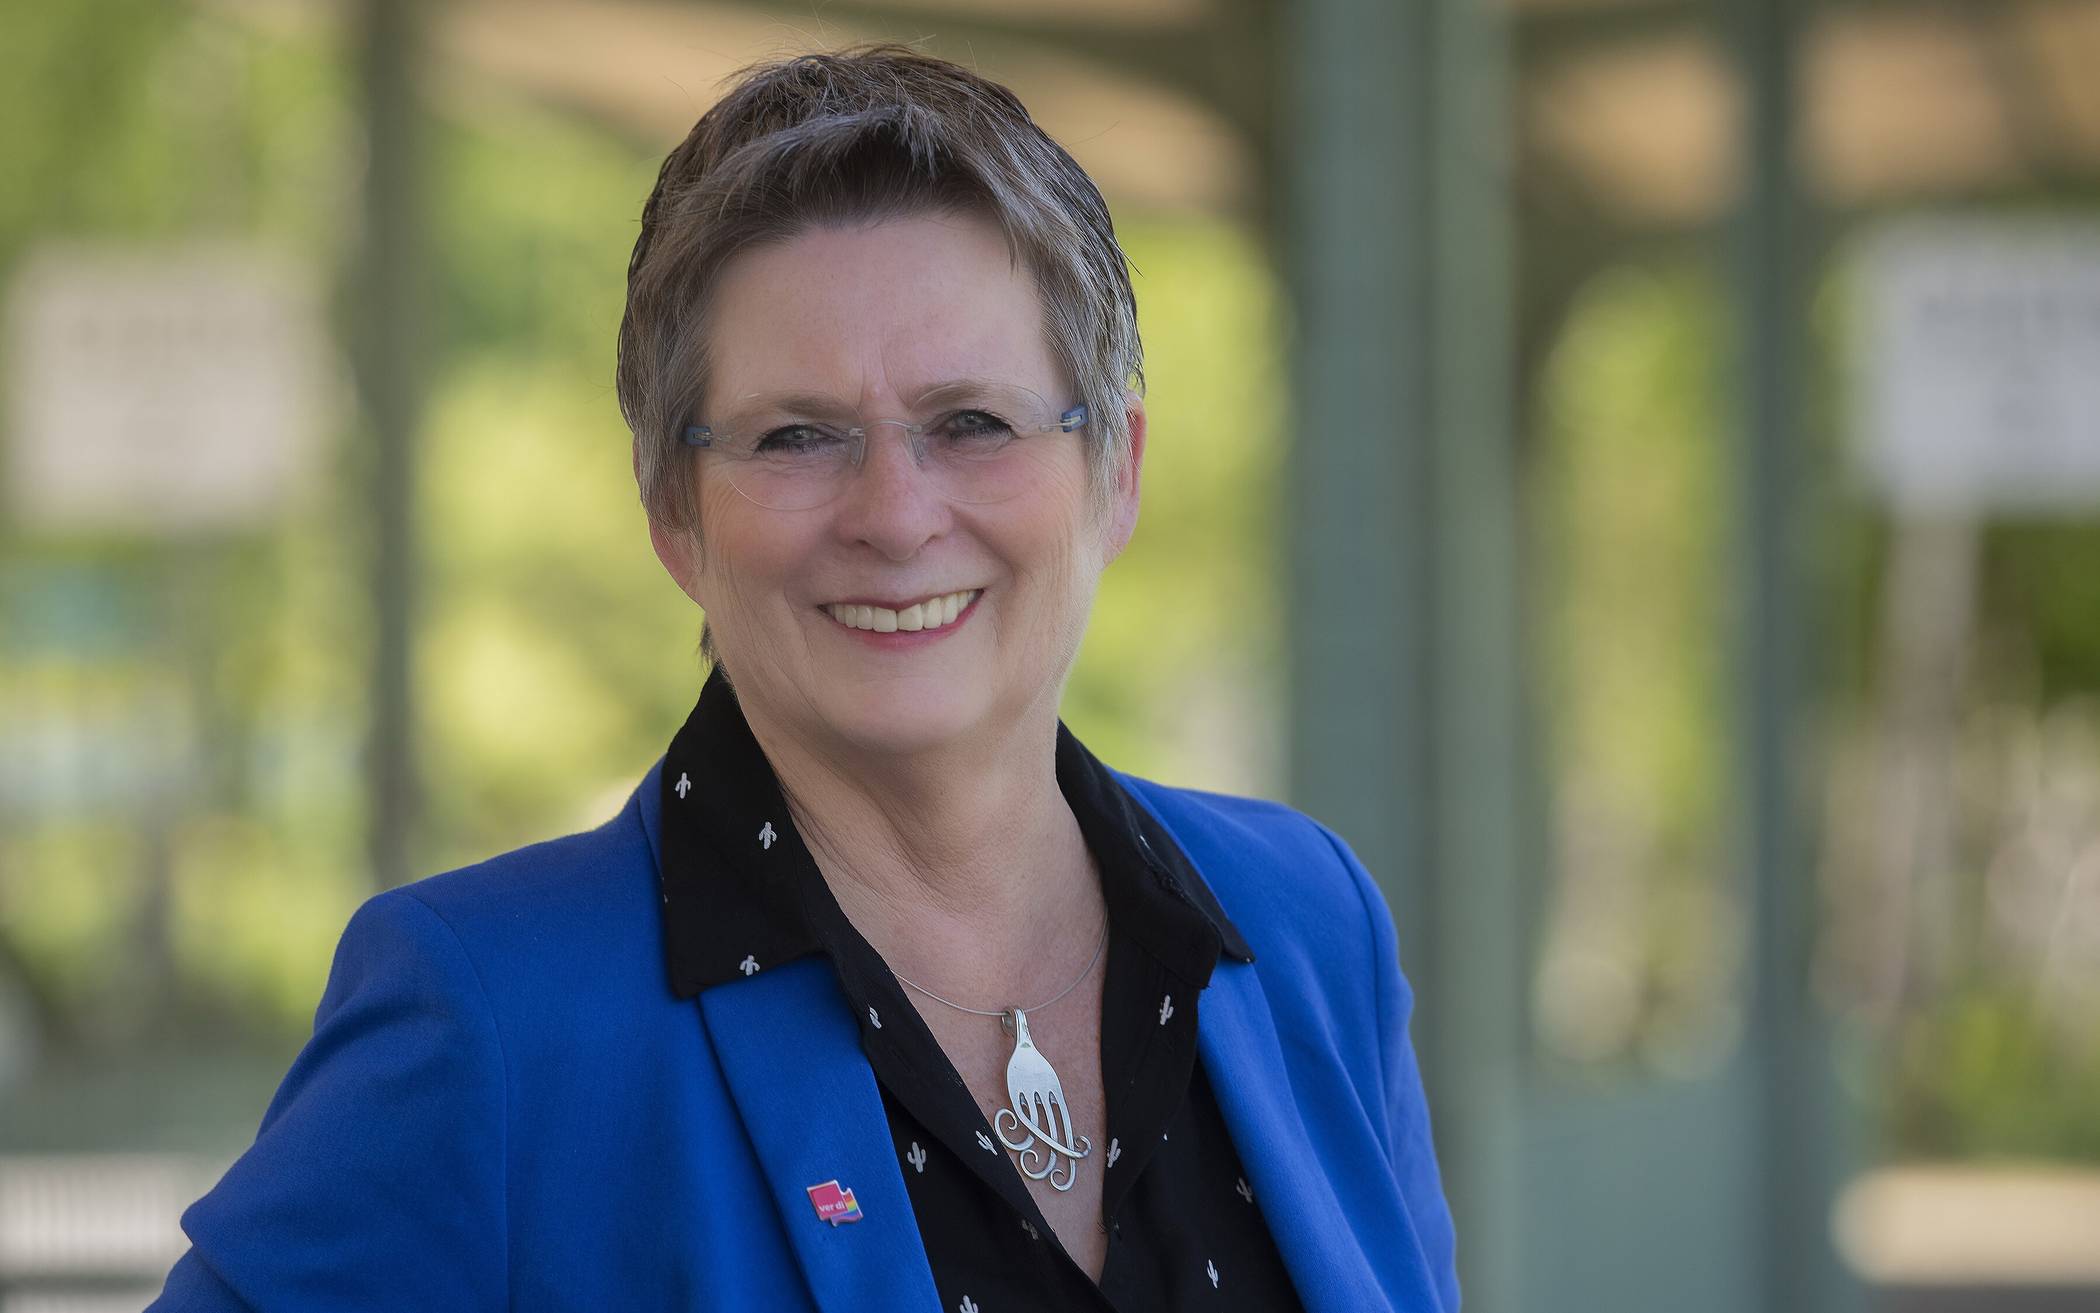  Claudia Radtke ist Vorsitzende des Wuppertaler Ausschuss für Gleichstellung und Antidiskriminierung. 